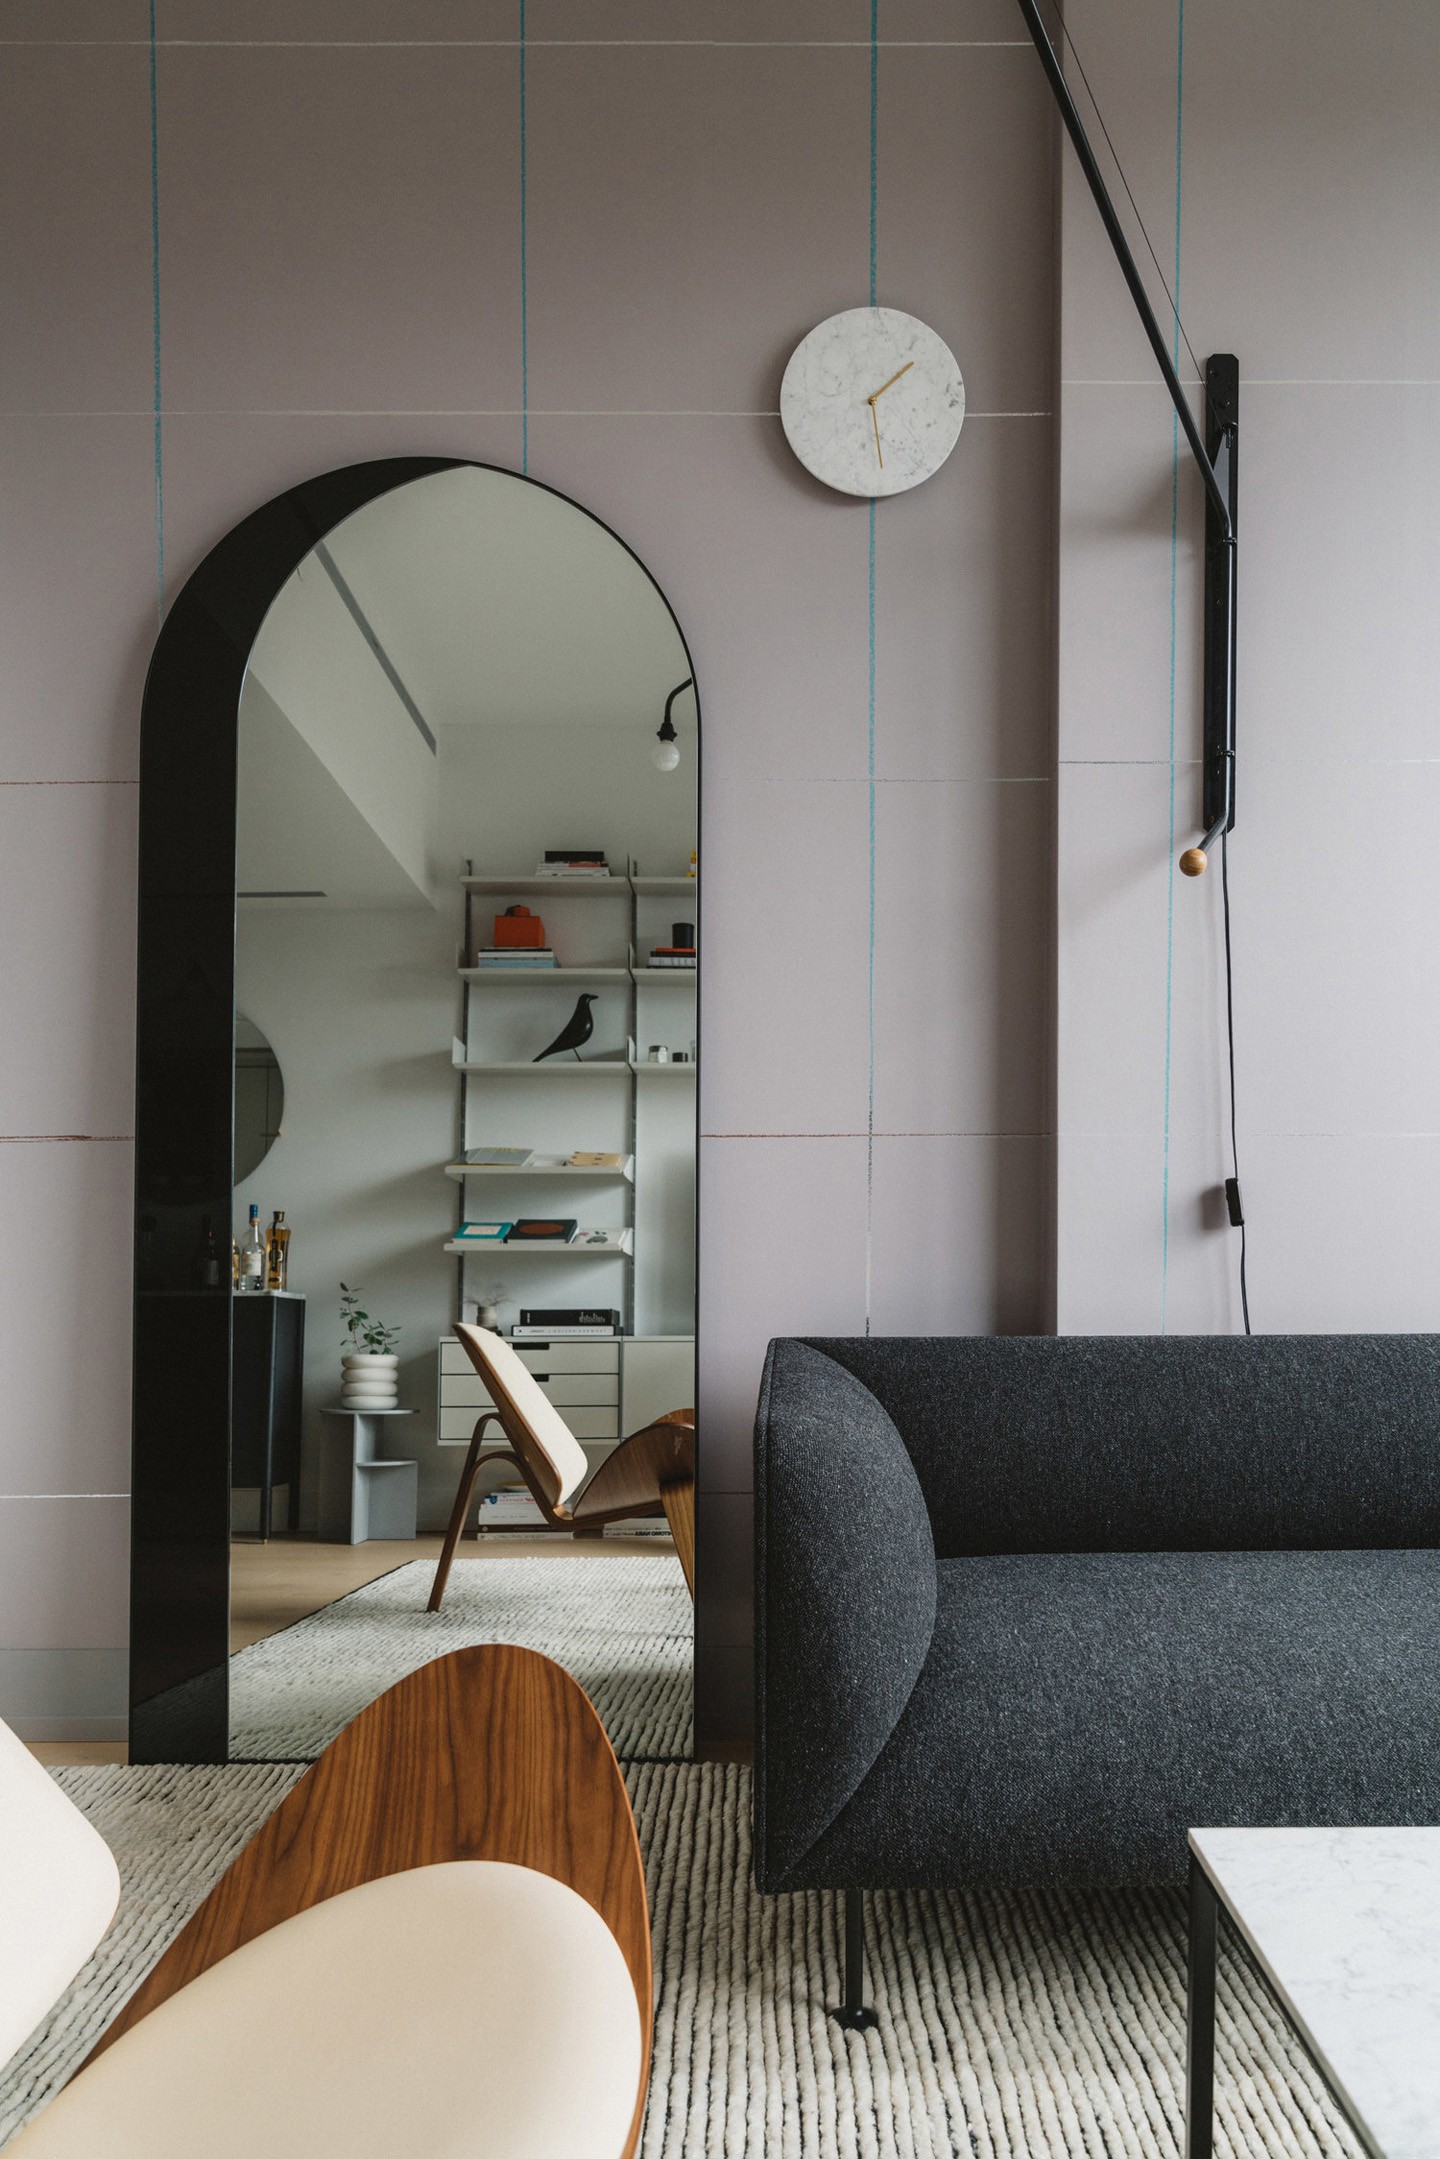 Décor do dia: papel de parede minimalista na sala de estar (Foto: Erica Choi e Hoon Kim/Divulgação)